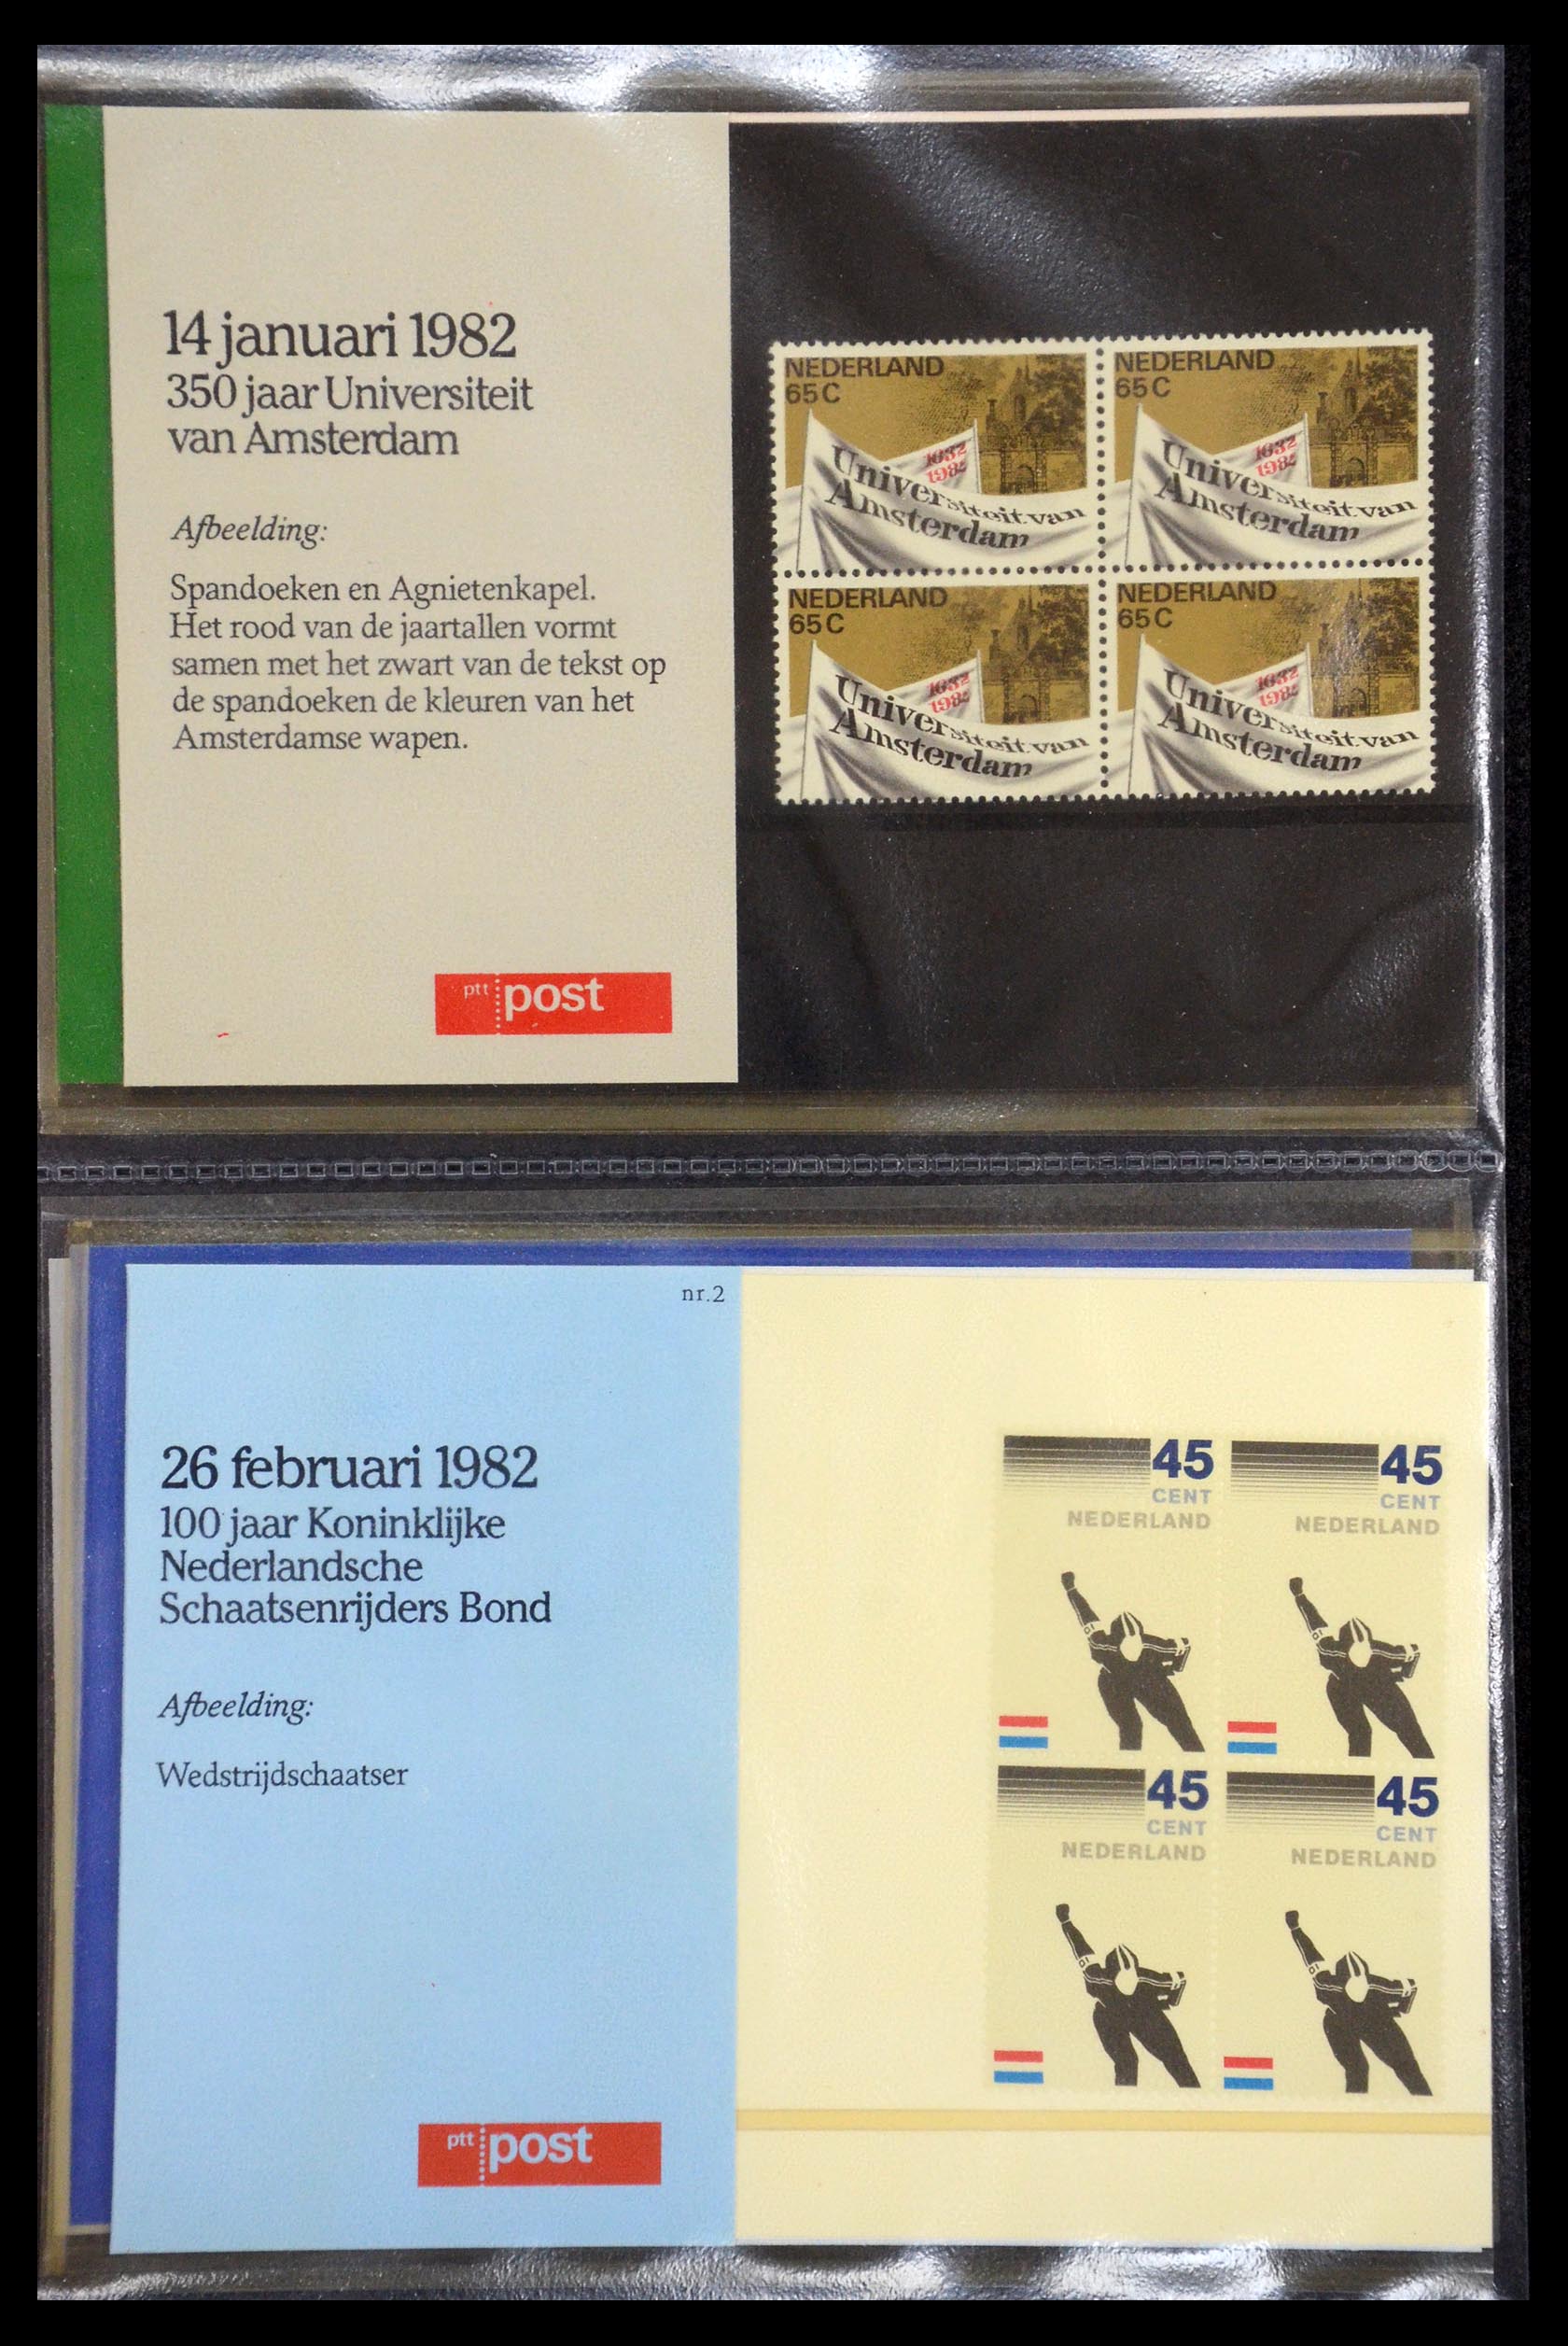 35187 001 - Stamp Collection 35187 Netherlands PTT presentation packs 1982-2019!